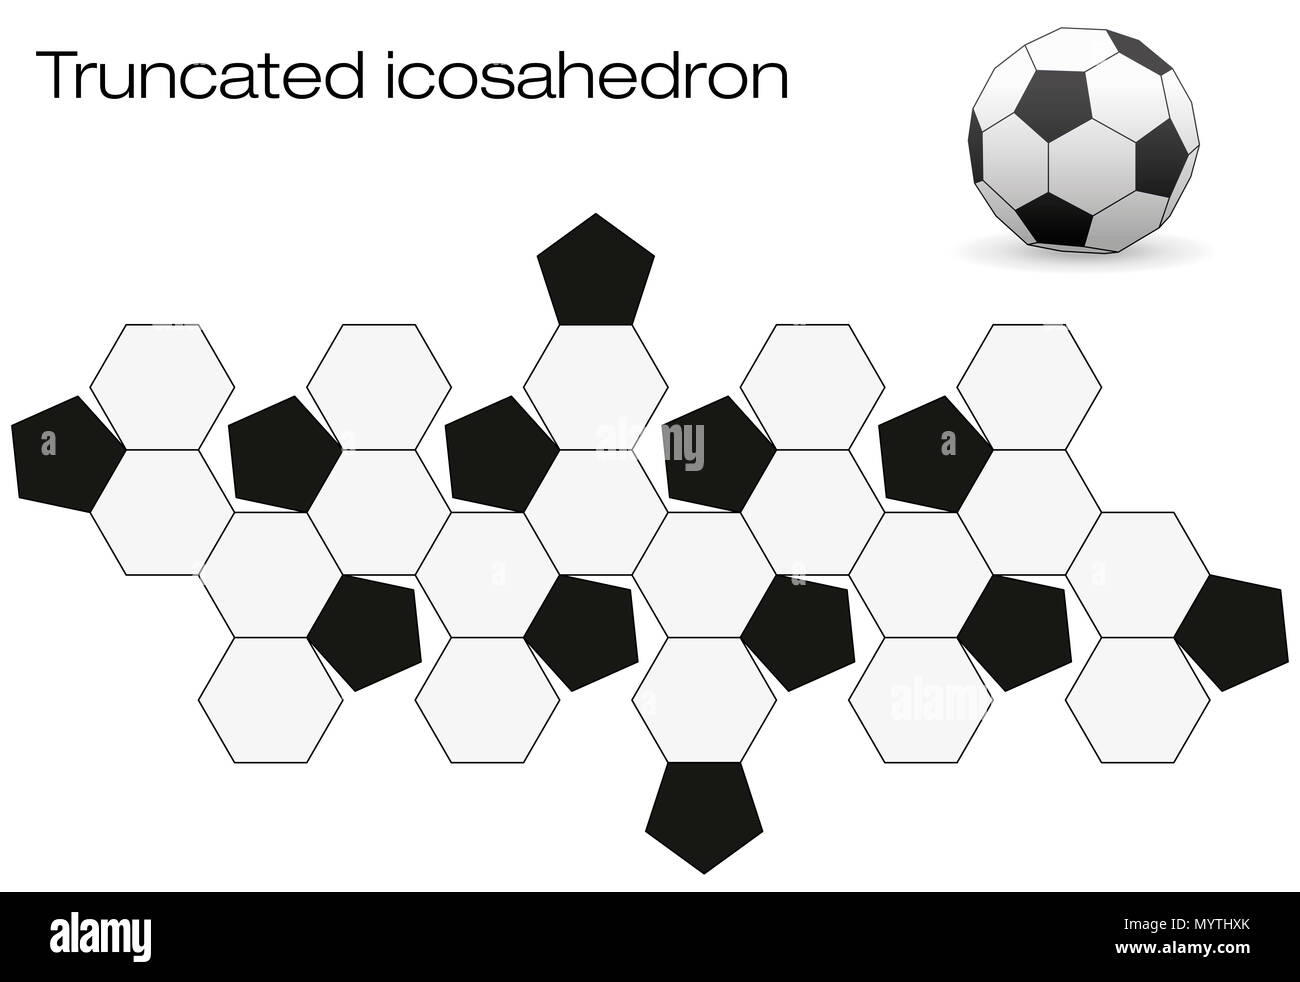 È dispiegata pallone da calcio superficie. Poliedro geometrico chiamato  troncato icosaedro, una coclea solido con dodici nero e venti facce bianche  Foto stock - Alamy